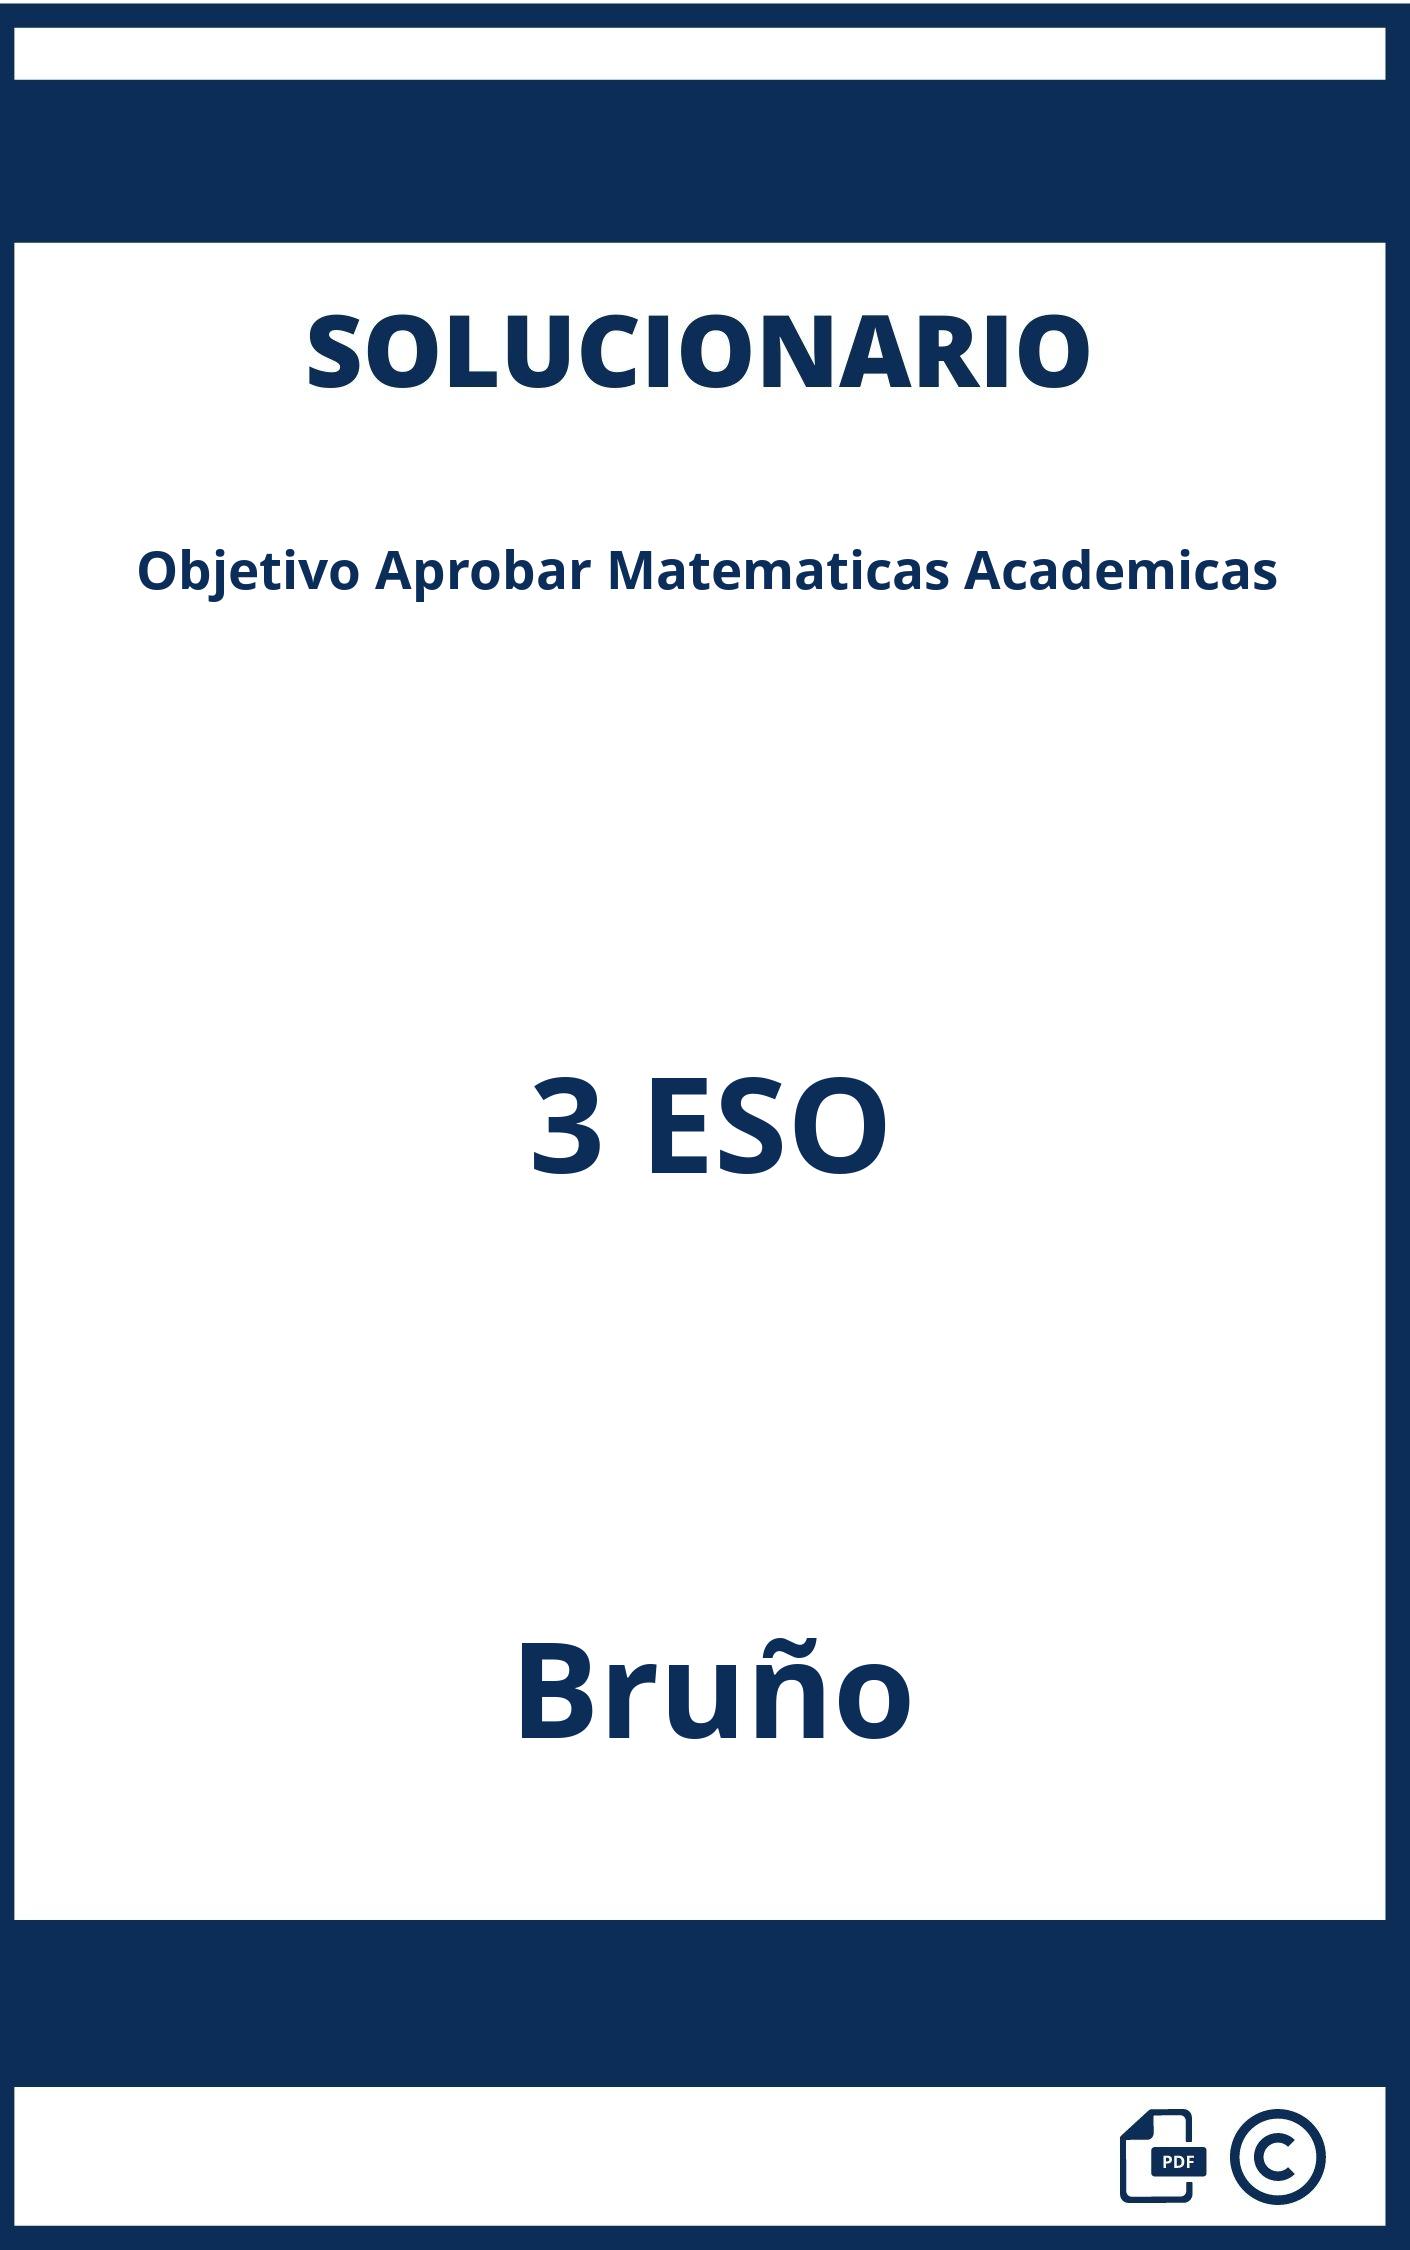 Solucionario Objetivo Aprobar Matematicas Academicas 3 ESO Bruño